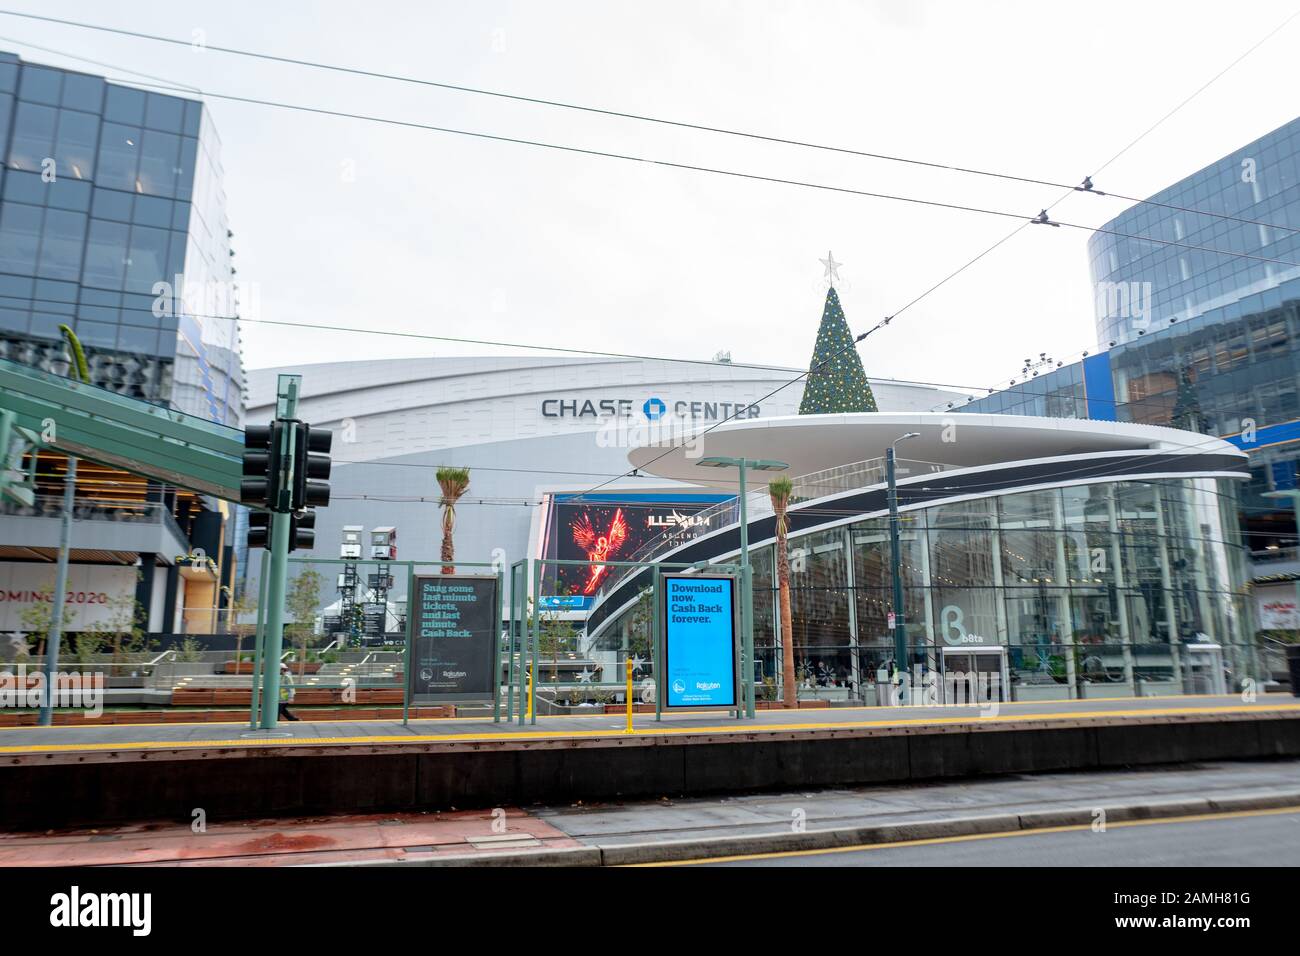 Gare ferroviaire et façade au Chase Center, la nouvelle maison de l'équipe de basket-ball des Golden State Warriors NBA dans le quartier de Mission Bay à San Francisco, Californie, 5 décembre 2019. () Banque D'Images